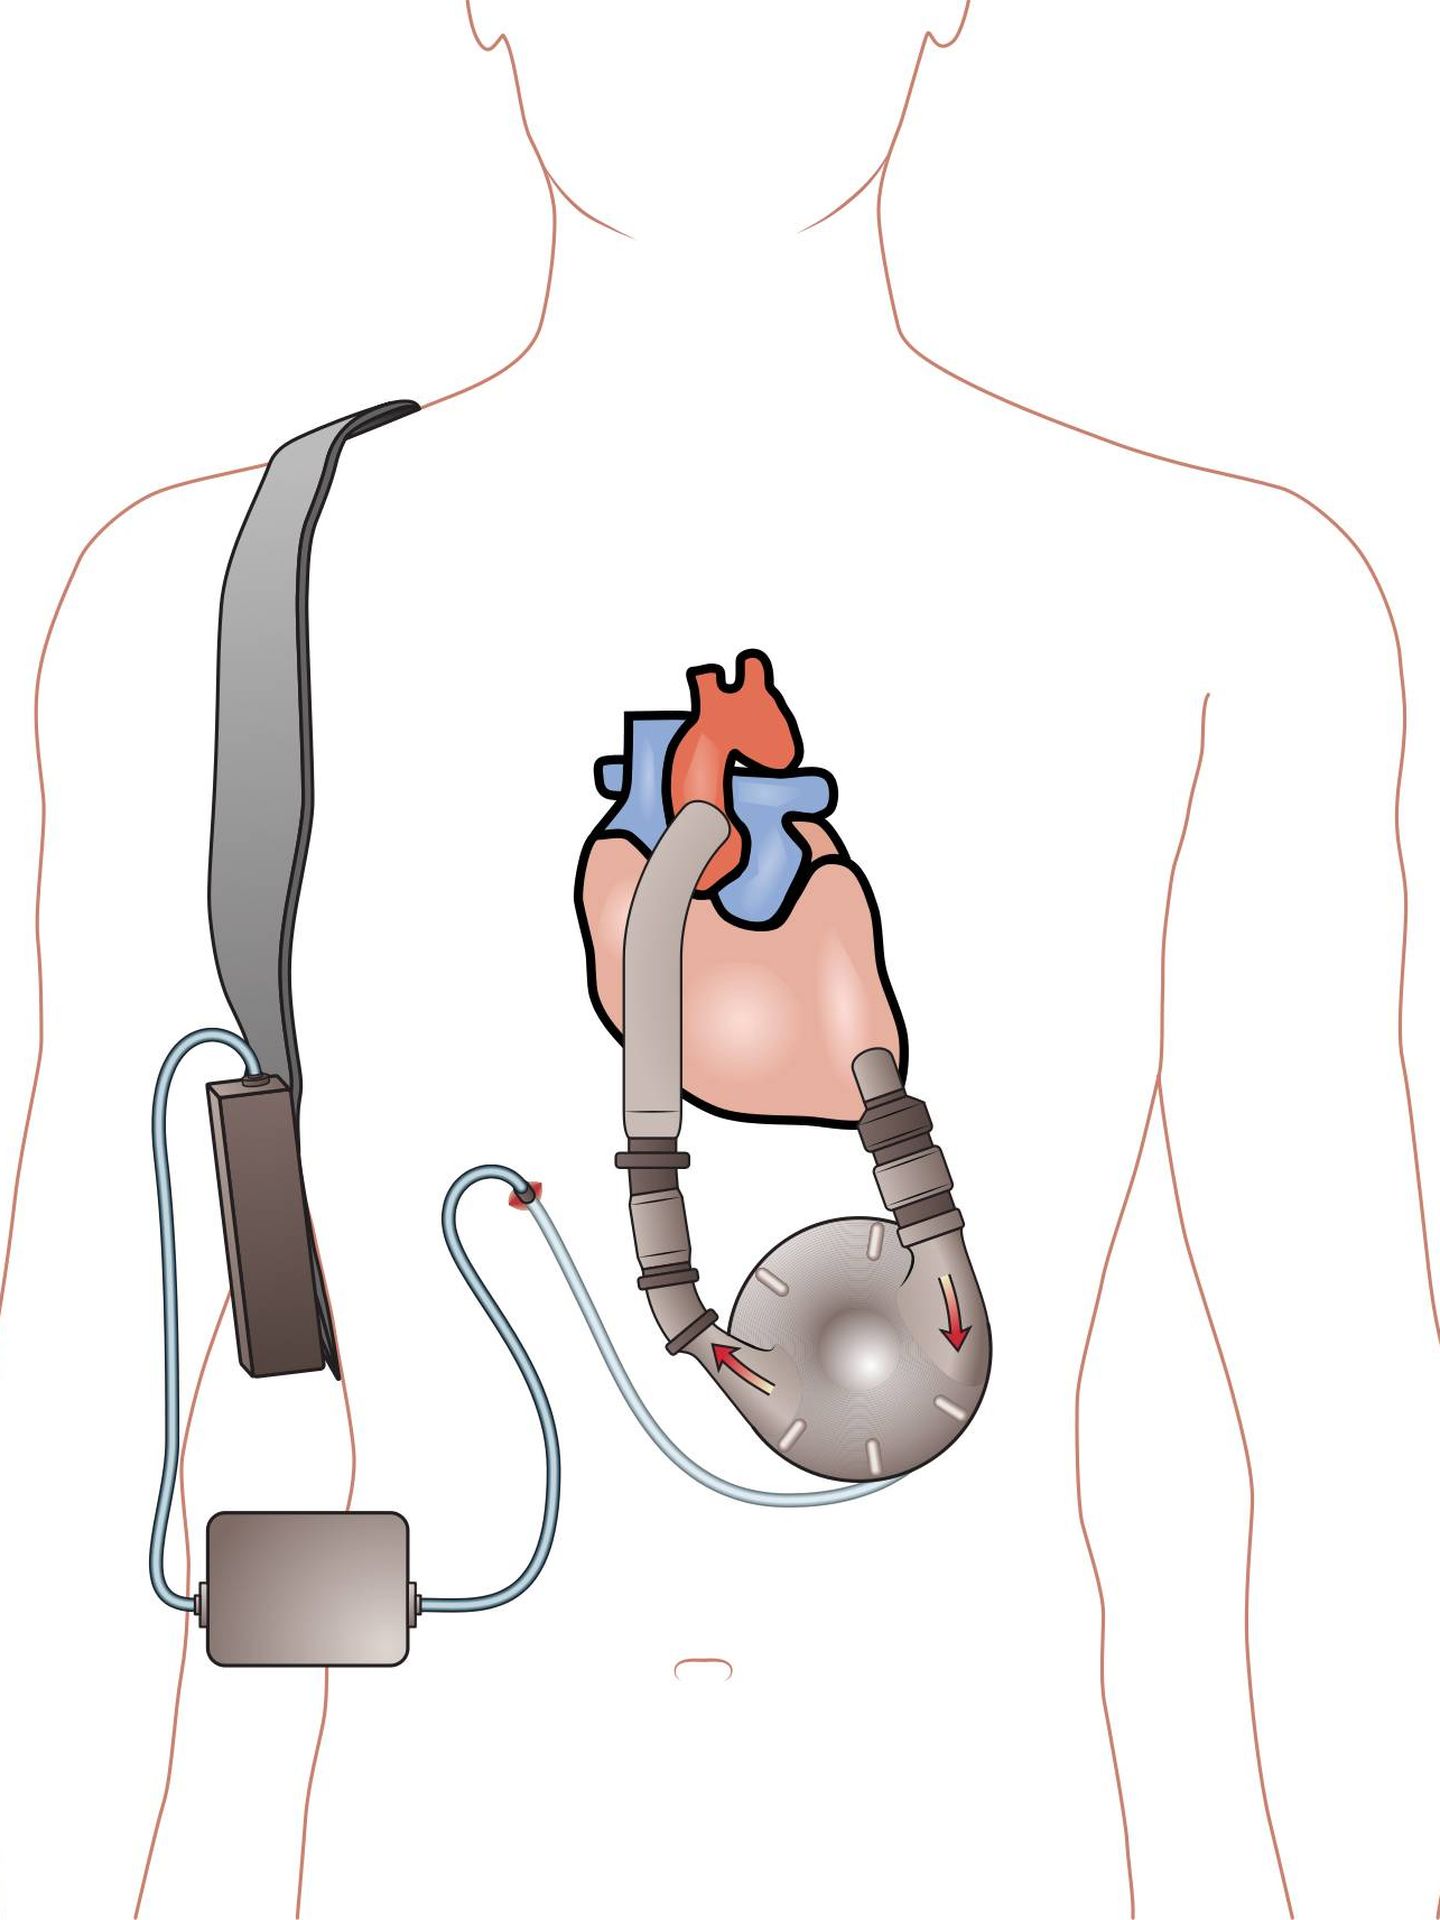 Un dispositivo de asistencia ventricular.